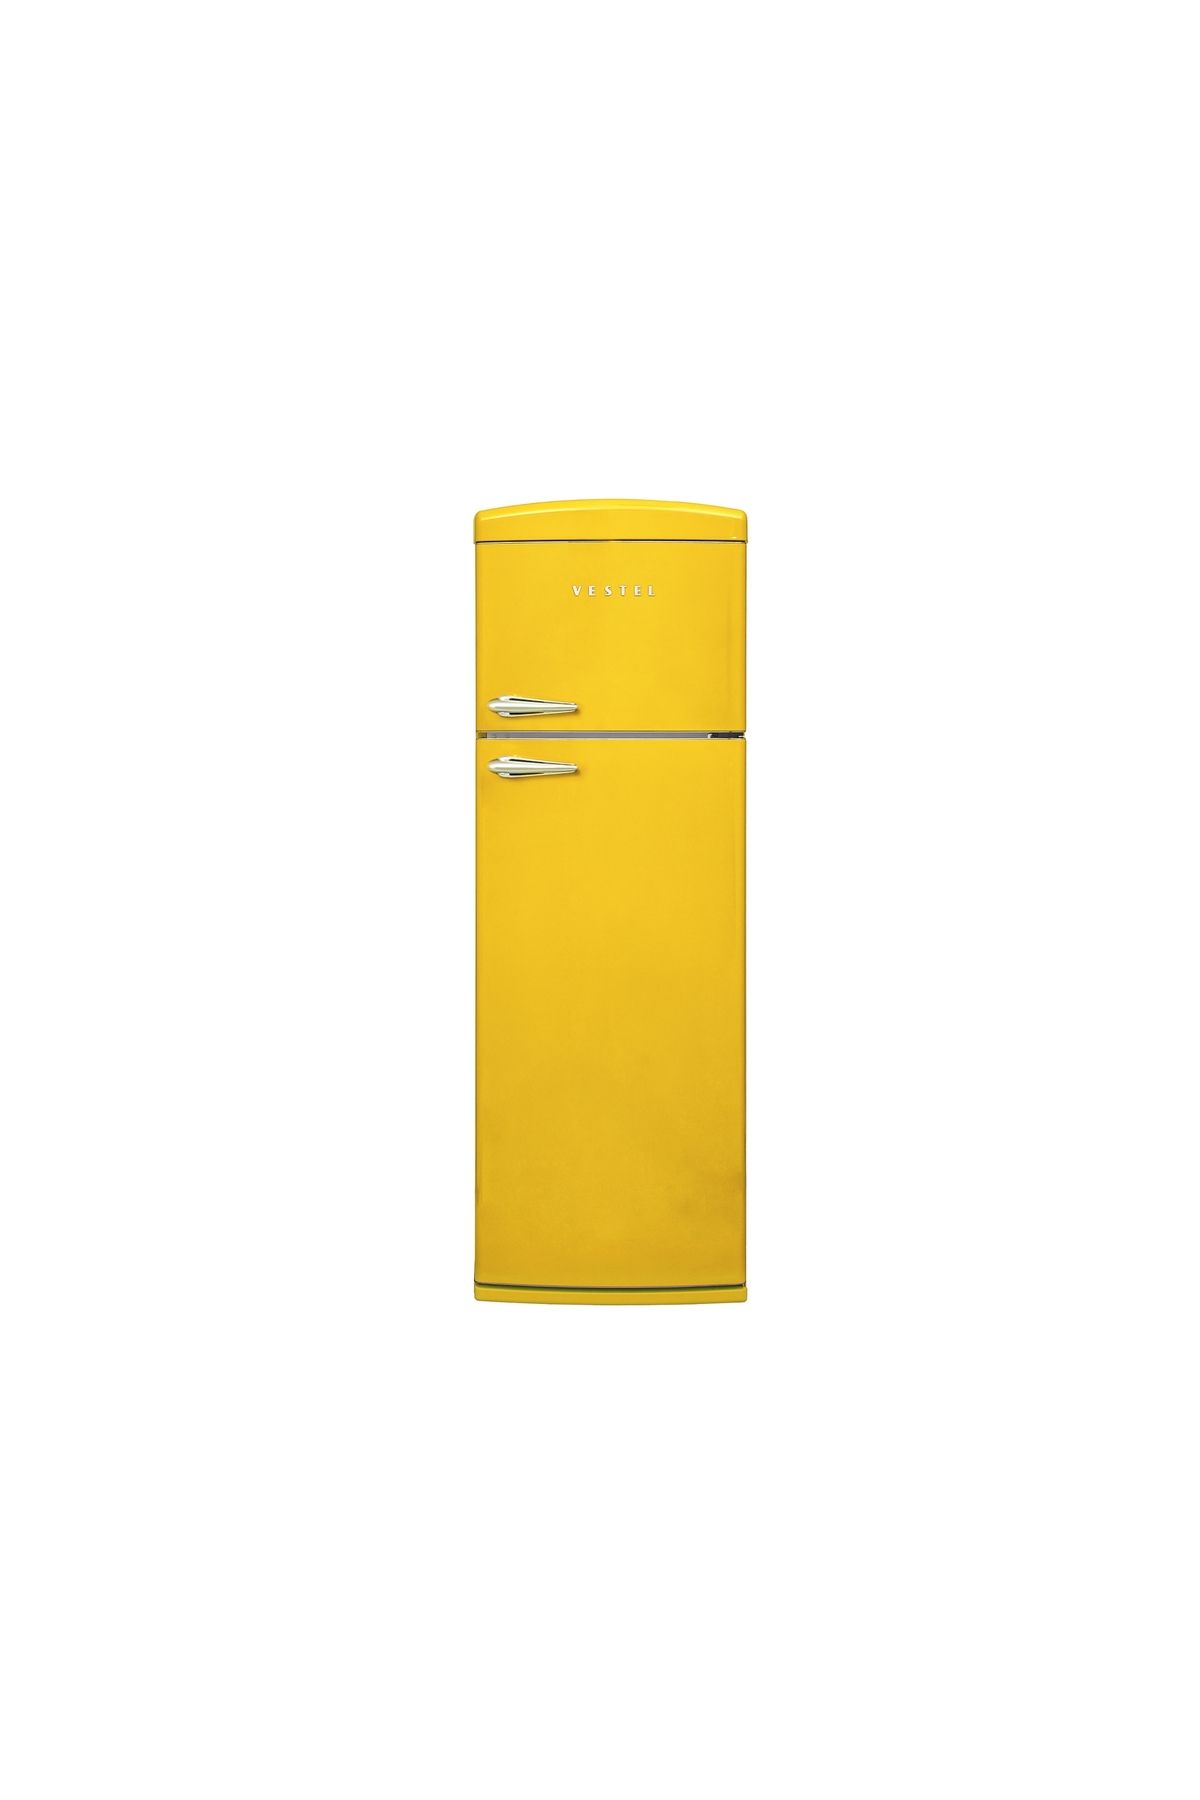 VESTEL RETRO SC32011 Sarı Statik Buzdolabı